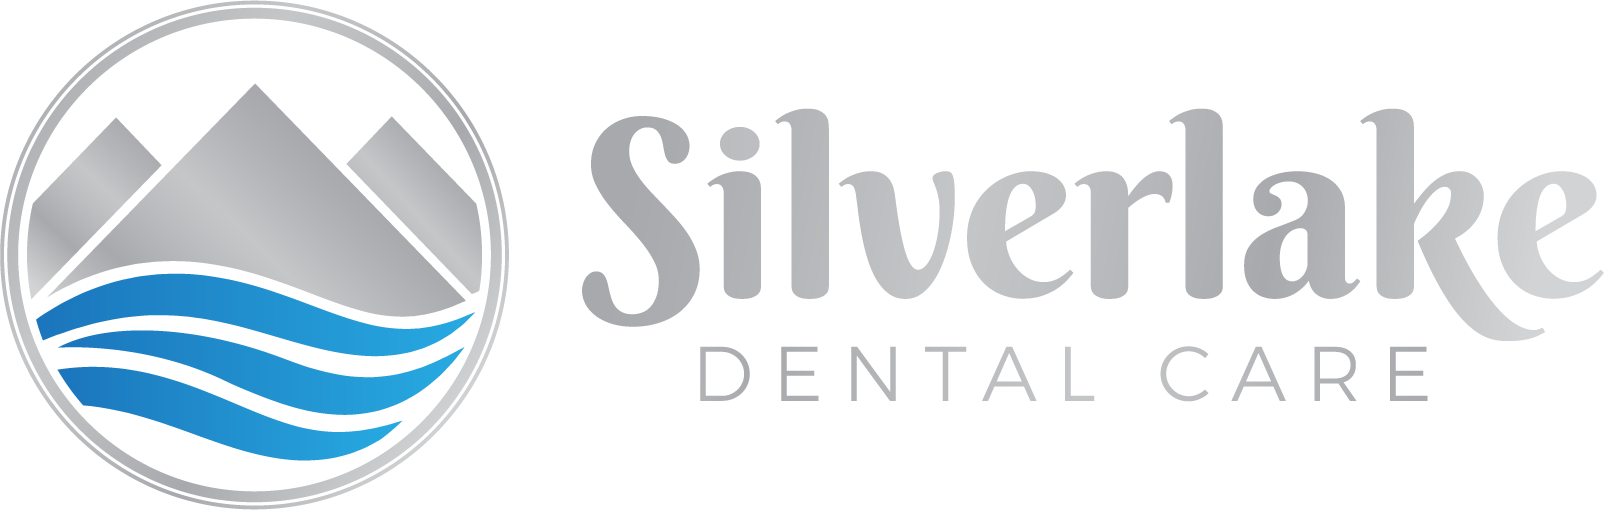 Sliver Lake Dental Care